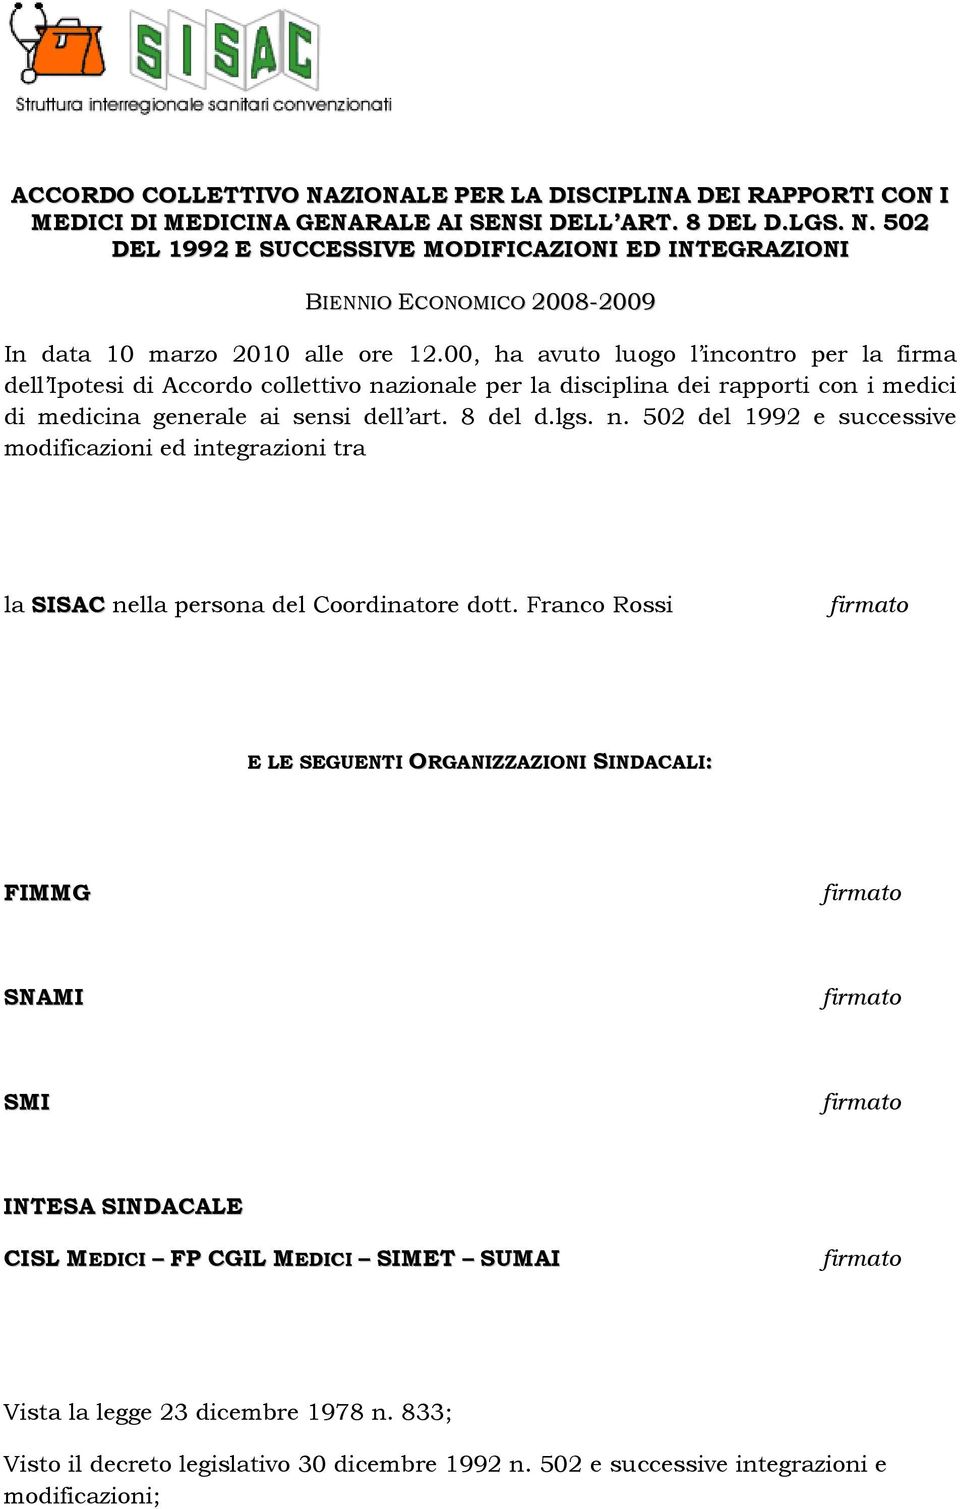 Franco Rossi firmato E LE SEGUENTI ORGANIZZAZIONI SINDACALI: FIMMG firmato SNAMI firmato SMI firmato INTESA SINDACALE CISL MEDICI FP CGIL MEDICI SIMET SUMAI firmato Vista la legge 23 dicembre 1978 n.